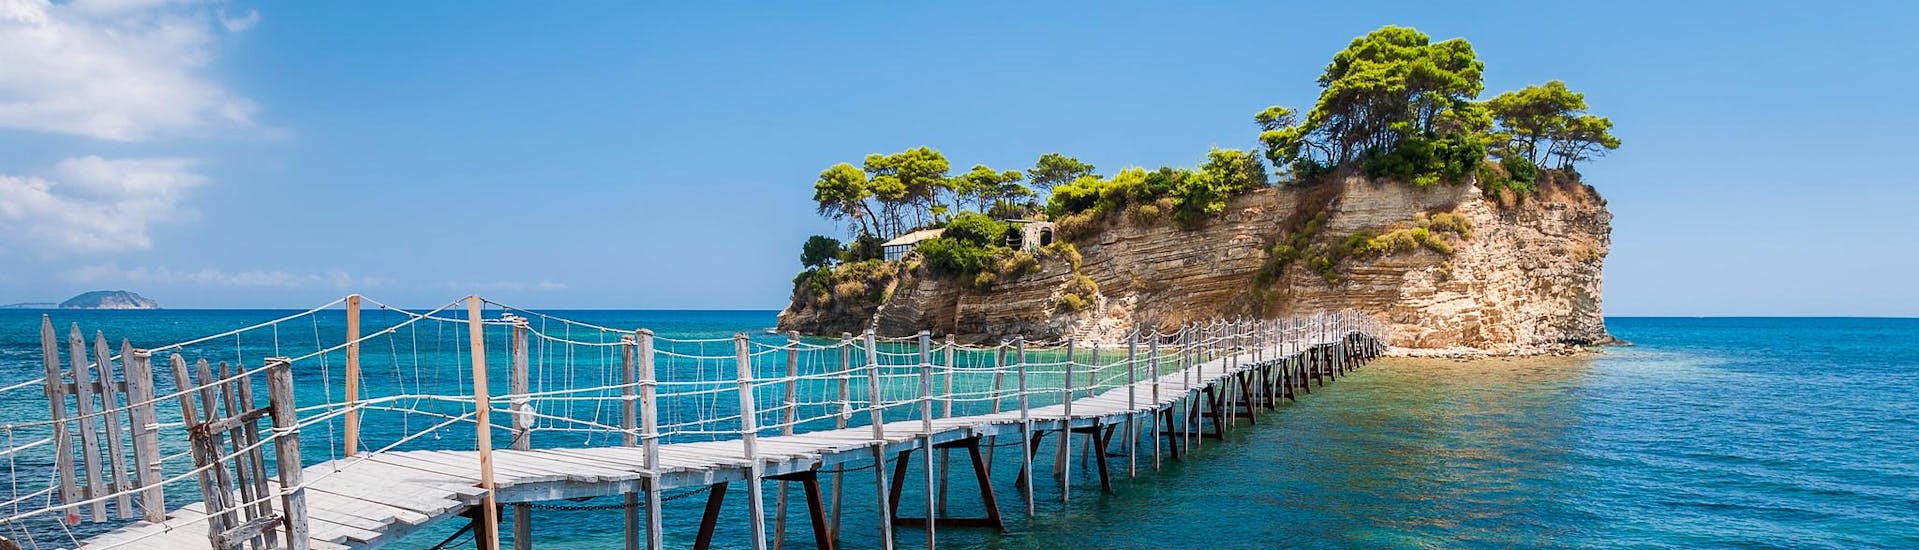 Vue sur l'île de Cameo, un endroit idyllique que l'on peut atteindre en faisant une balade en bateau à Zakynthos.